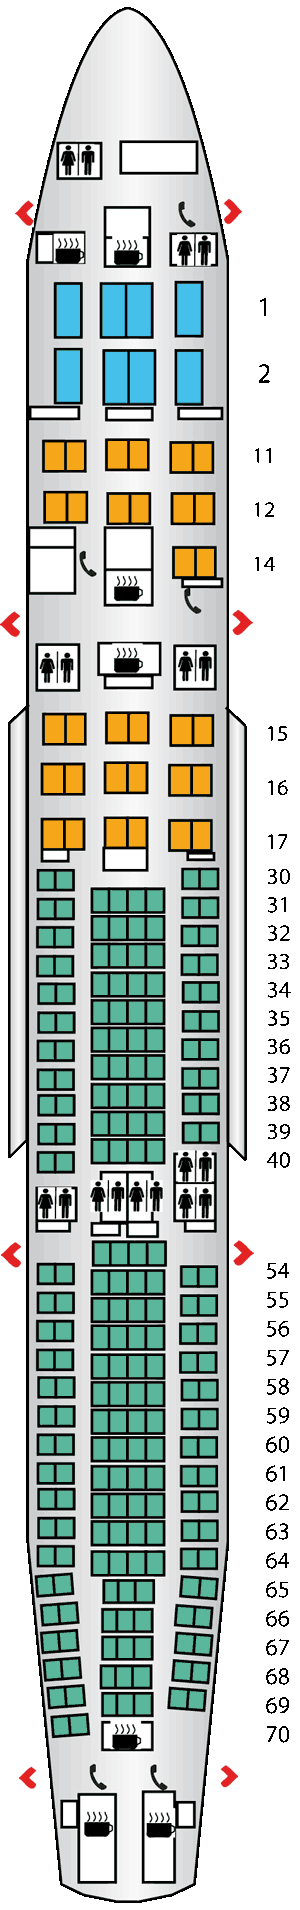 airbus seating plan. airbus a330 300 seat plan